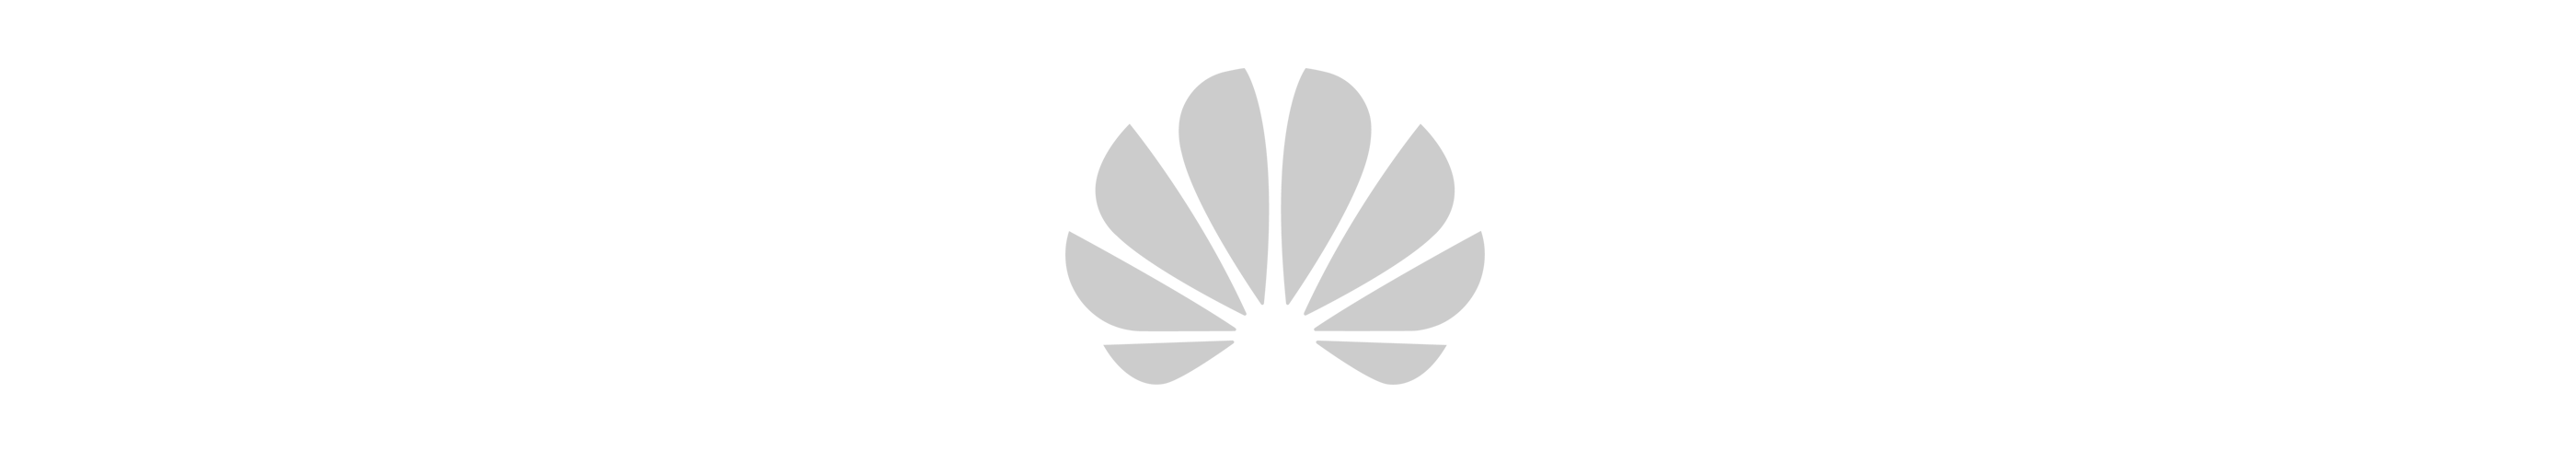 White Huawei Logo - HUAWEI Consumer. Make it Possible. HUAWEI Official Site. HUAWEI